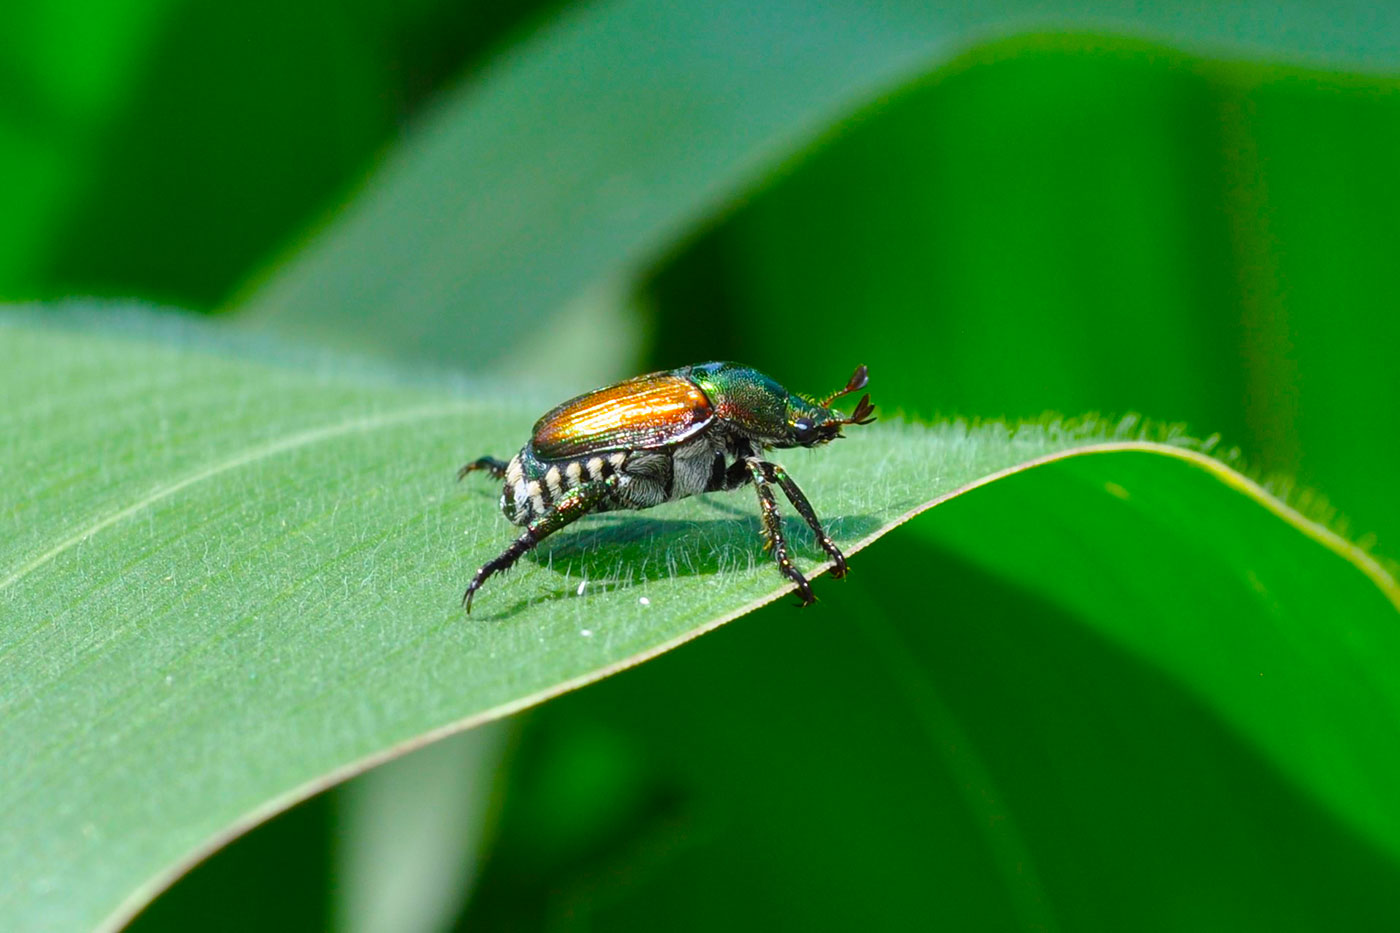 japanese beetle on corn leaf